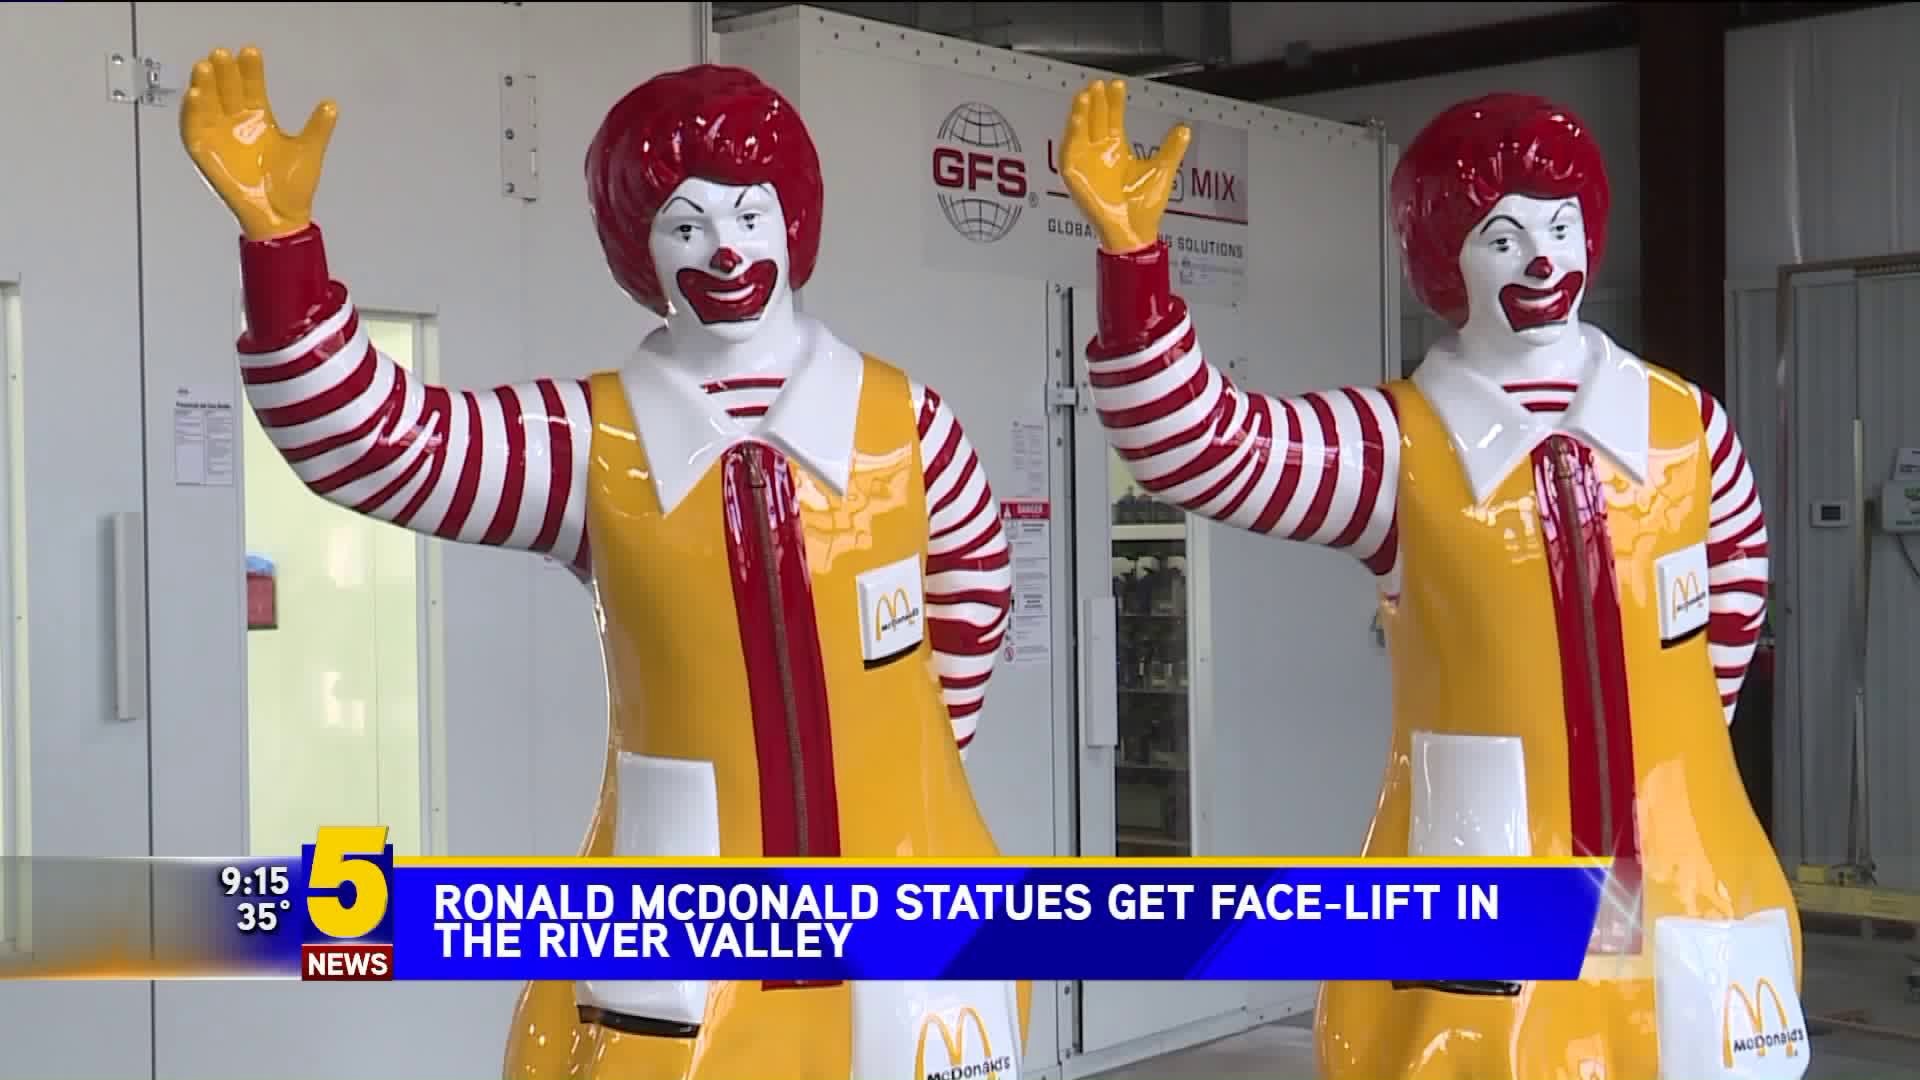 Ronald McDonald Statues